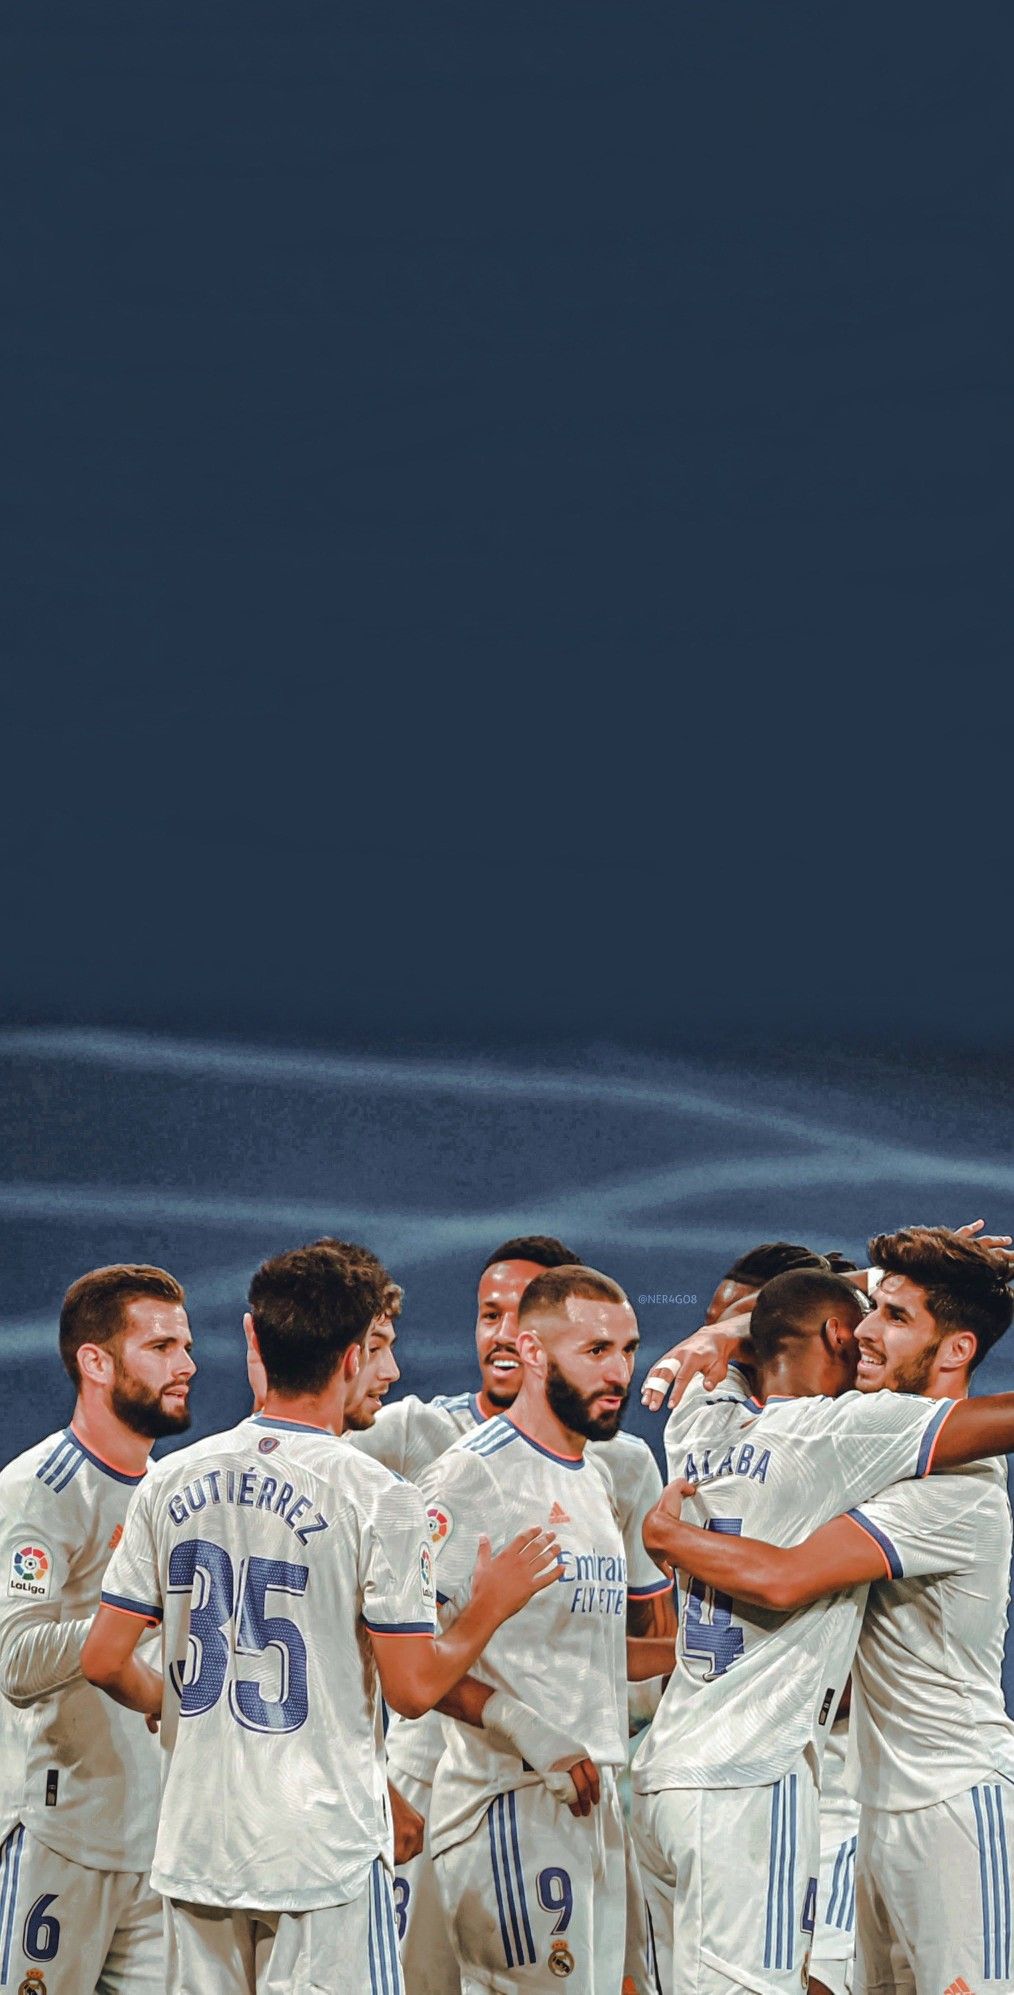 Real Madrid Wallpaper. Madrid wallpaper, Real madrid wallpaper, Real madrid photo